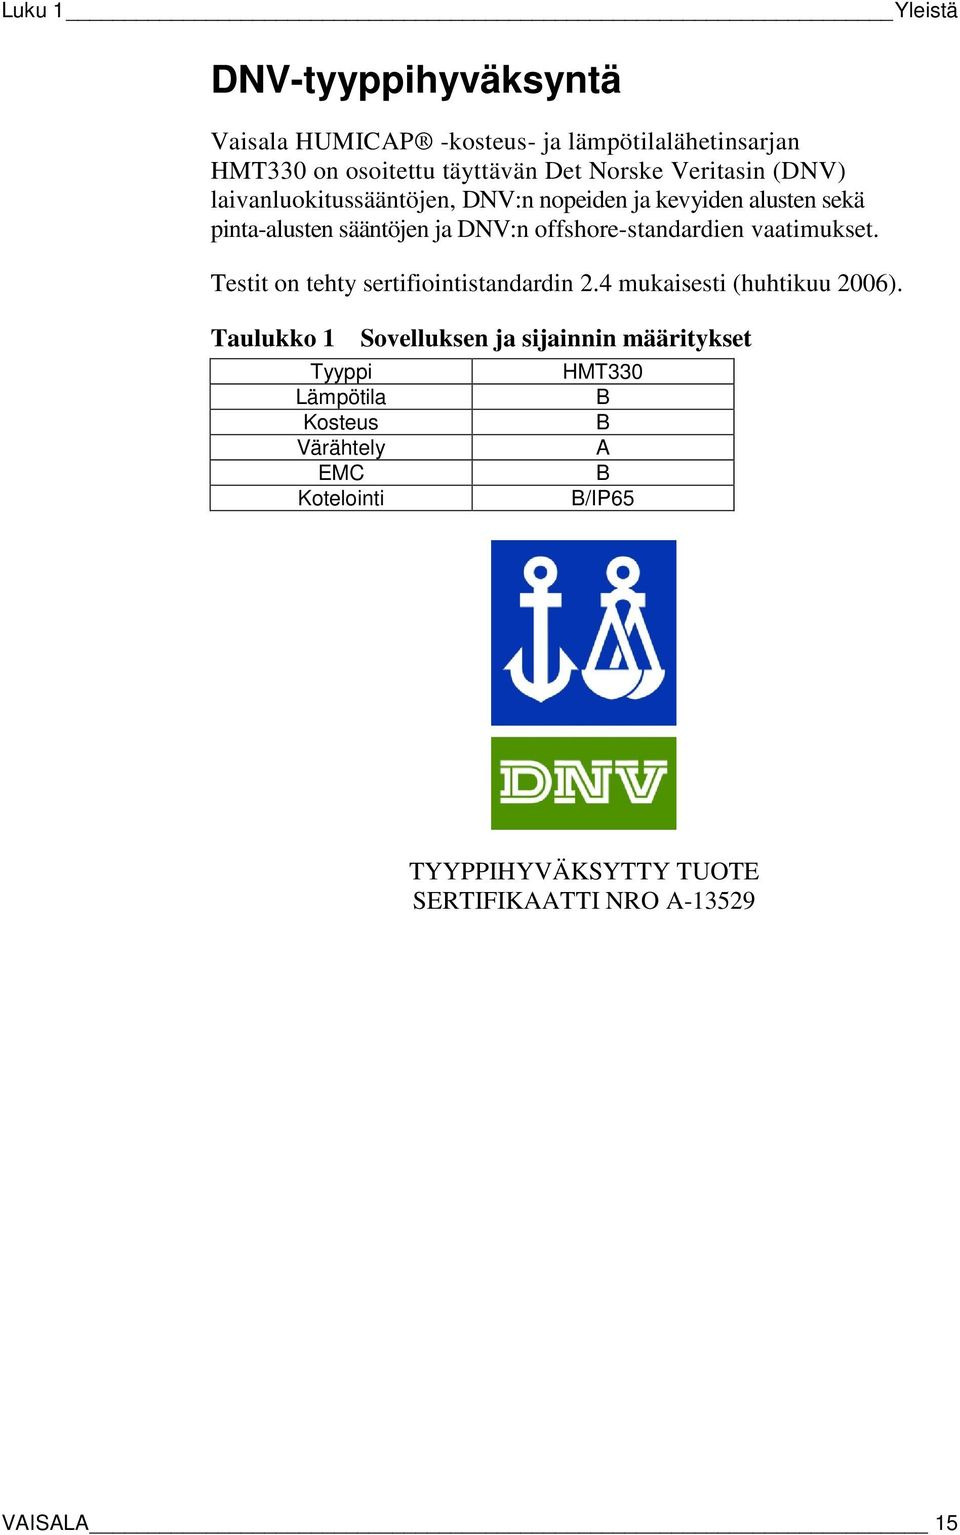 offshore-standardien vaatimukset. Testit on tehty sertifiointistandardin 2.4 mukaisesti (huhtikuu 2006).